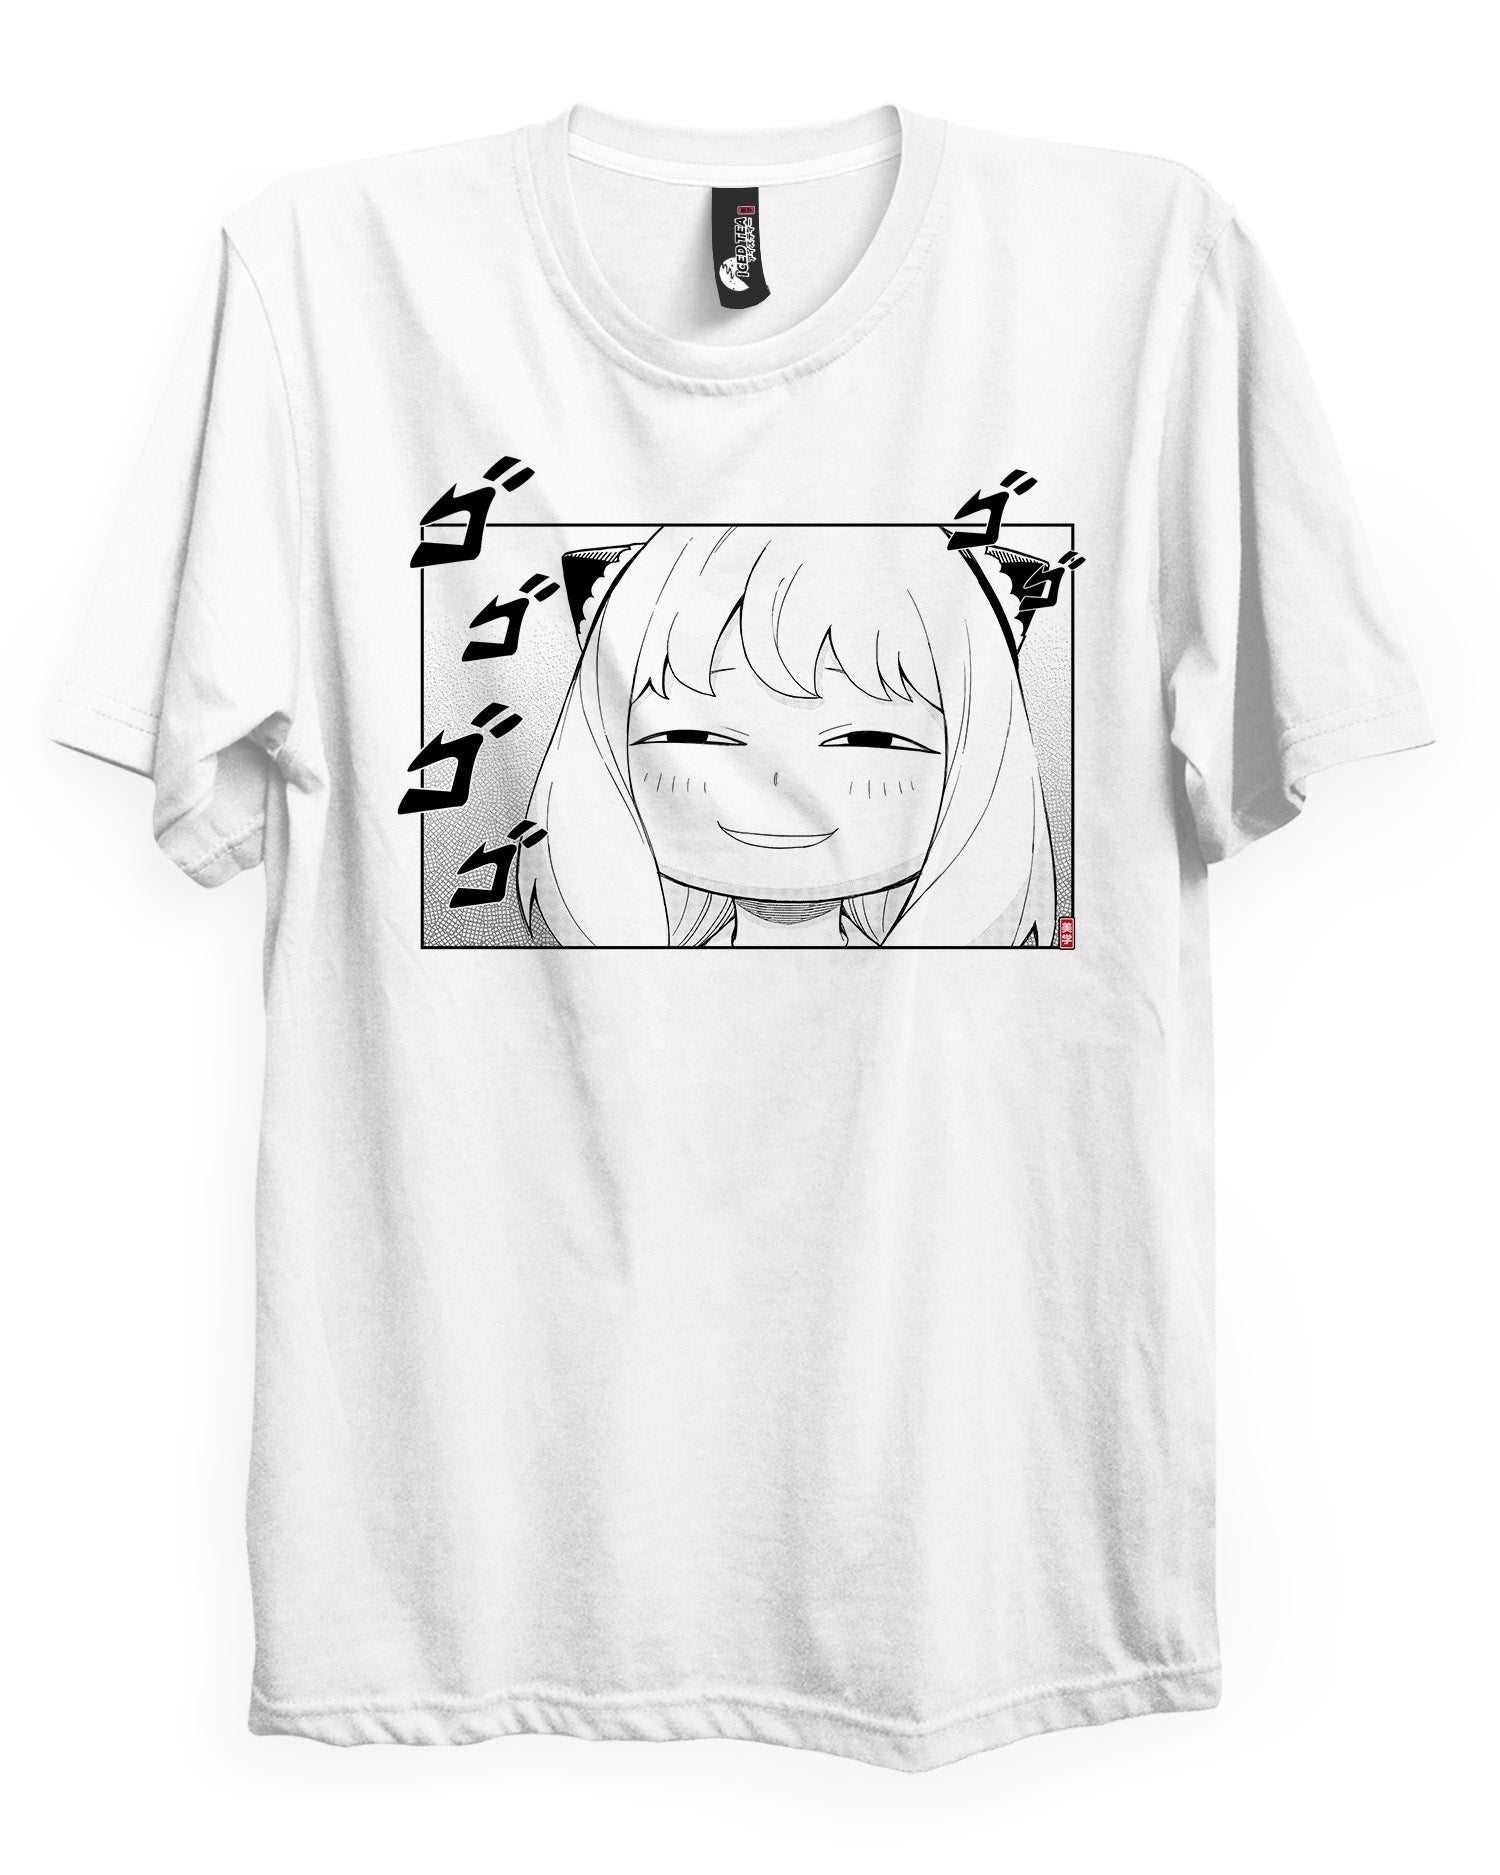 Anya (MENACING) - T-Shirt